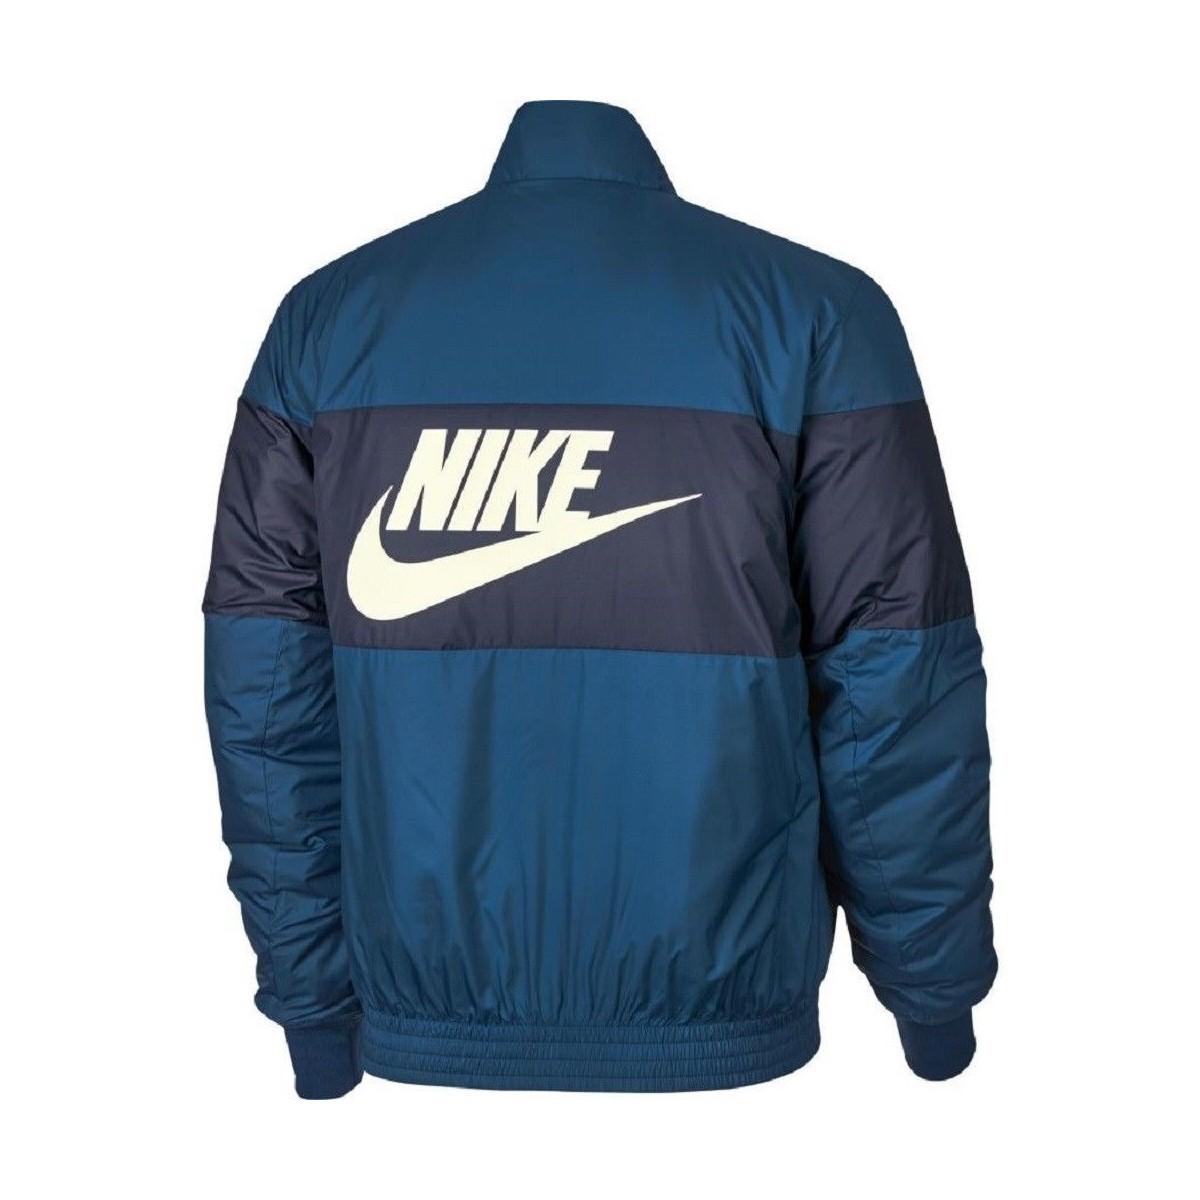 Nike Cazadora Bomber Aj1020 Sportswear Men's Jacket In Blue for Men - Lyst